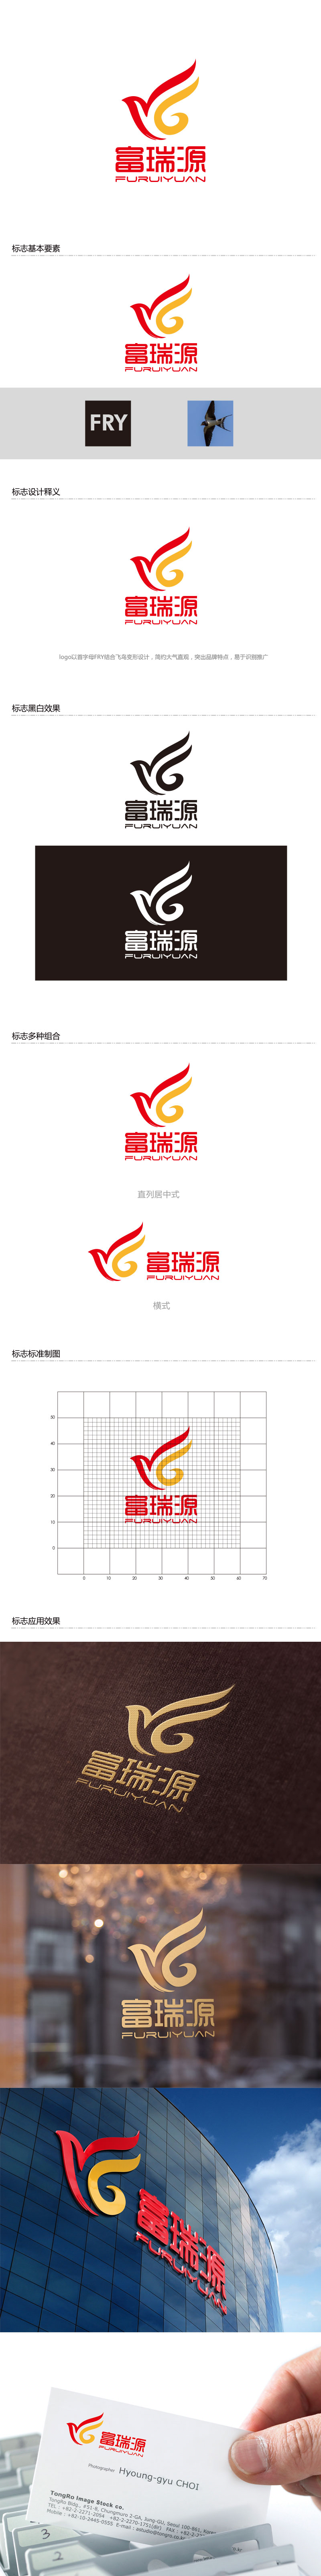 孙金泽的富瑞源logo设计